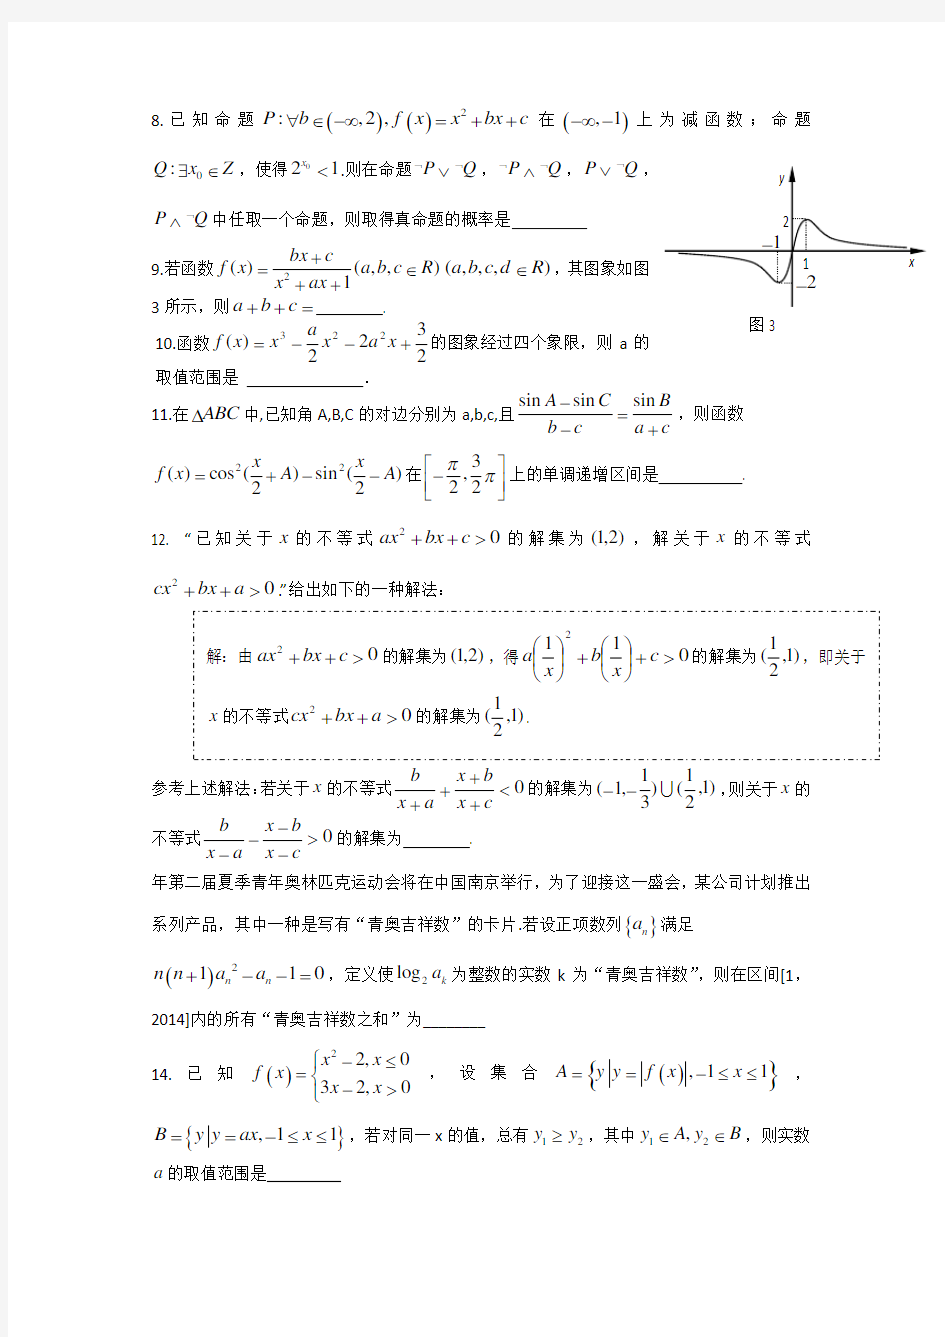 2015江苏高考压轴卷数学